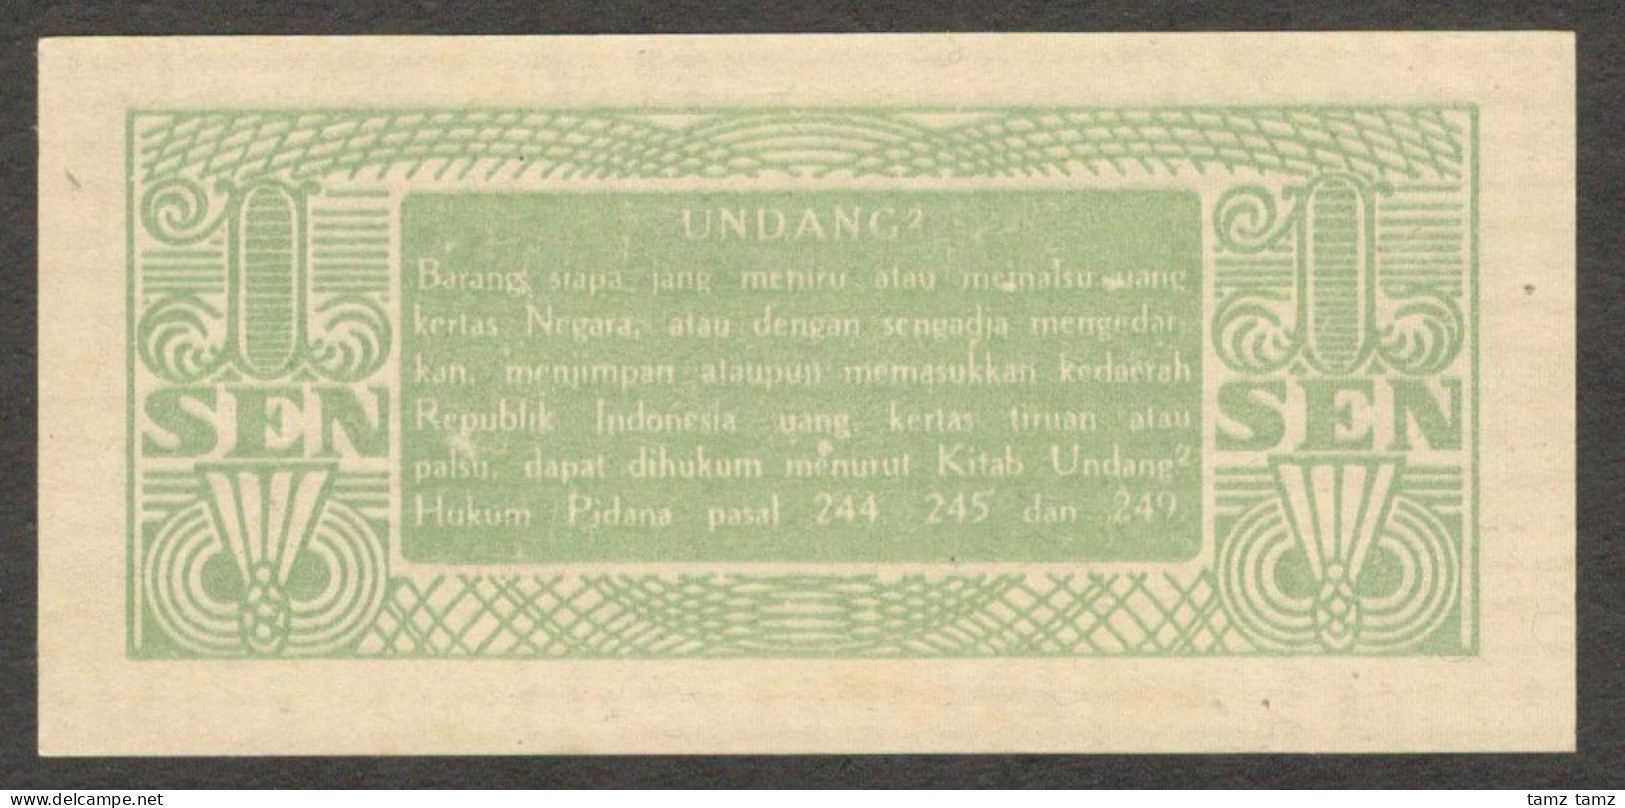 Oeang Republik Indonesia (ORI) 1 Sen 1945 P-13 UNC - Indonesië